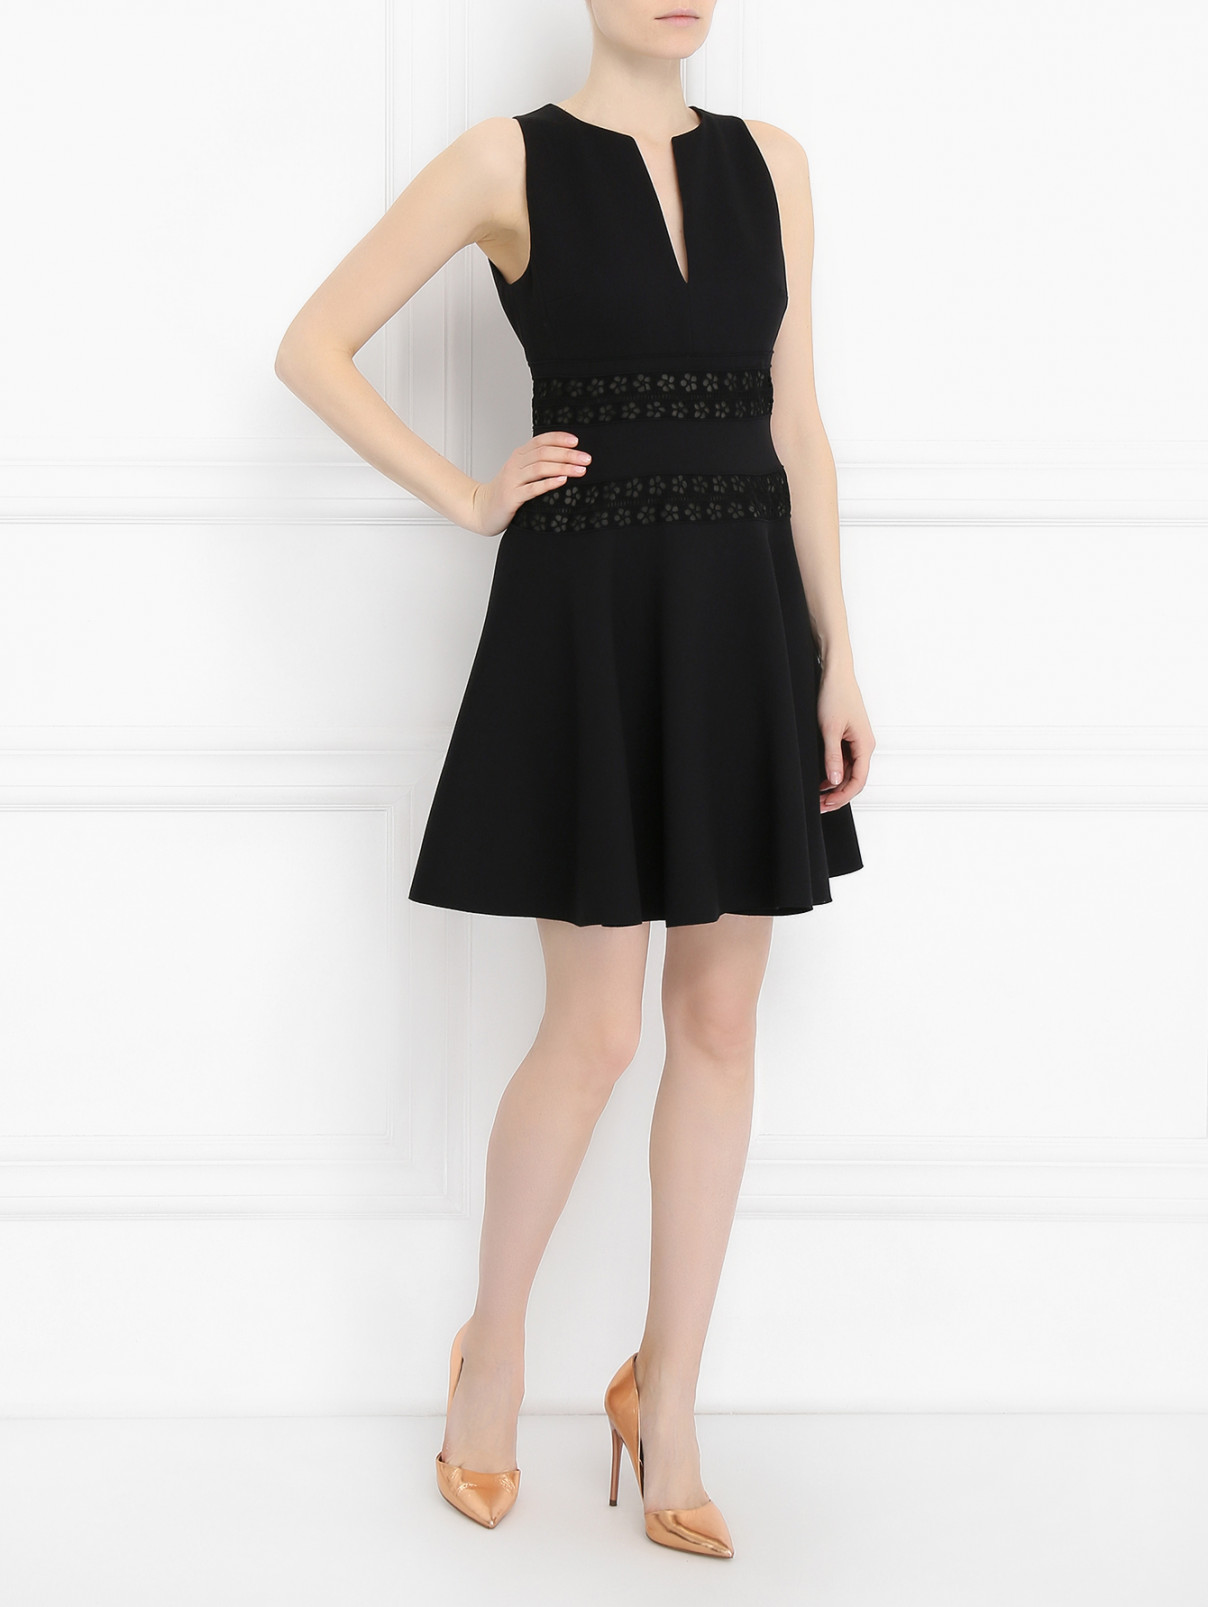 Платье-мини без рукавов, с кружевными вставками Giambattista Valli  –  Модель Общий вид  – Цвет:  Черный